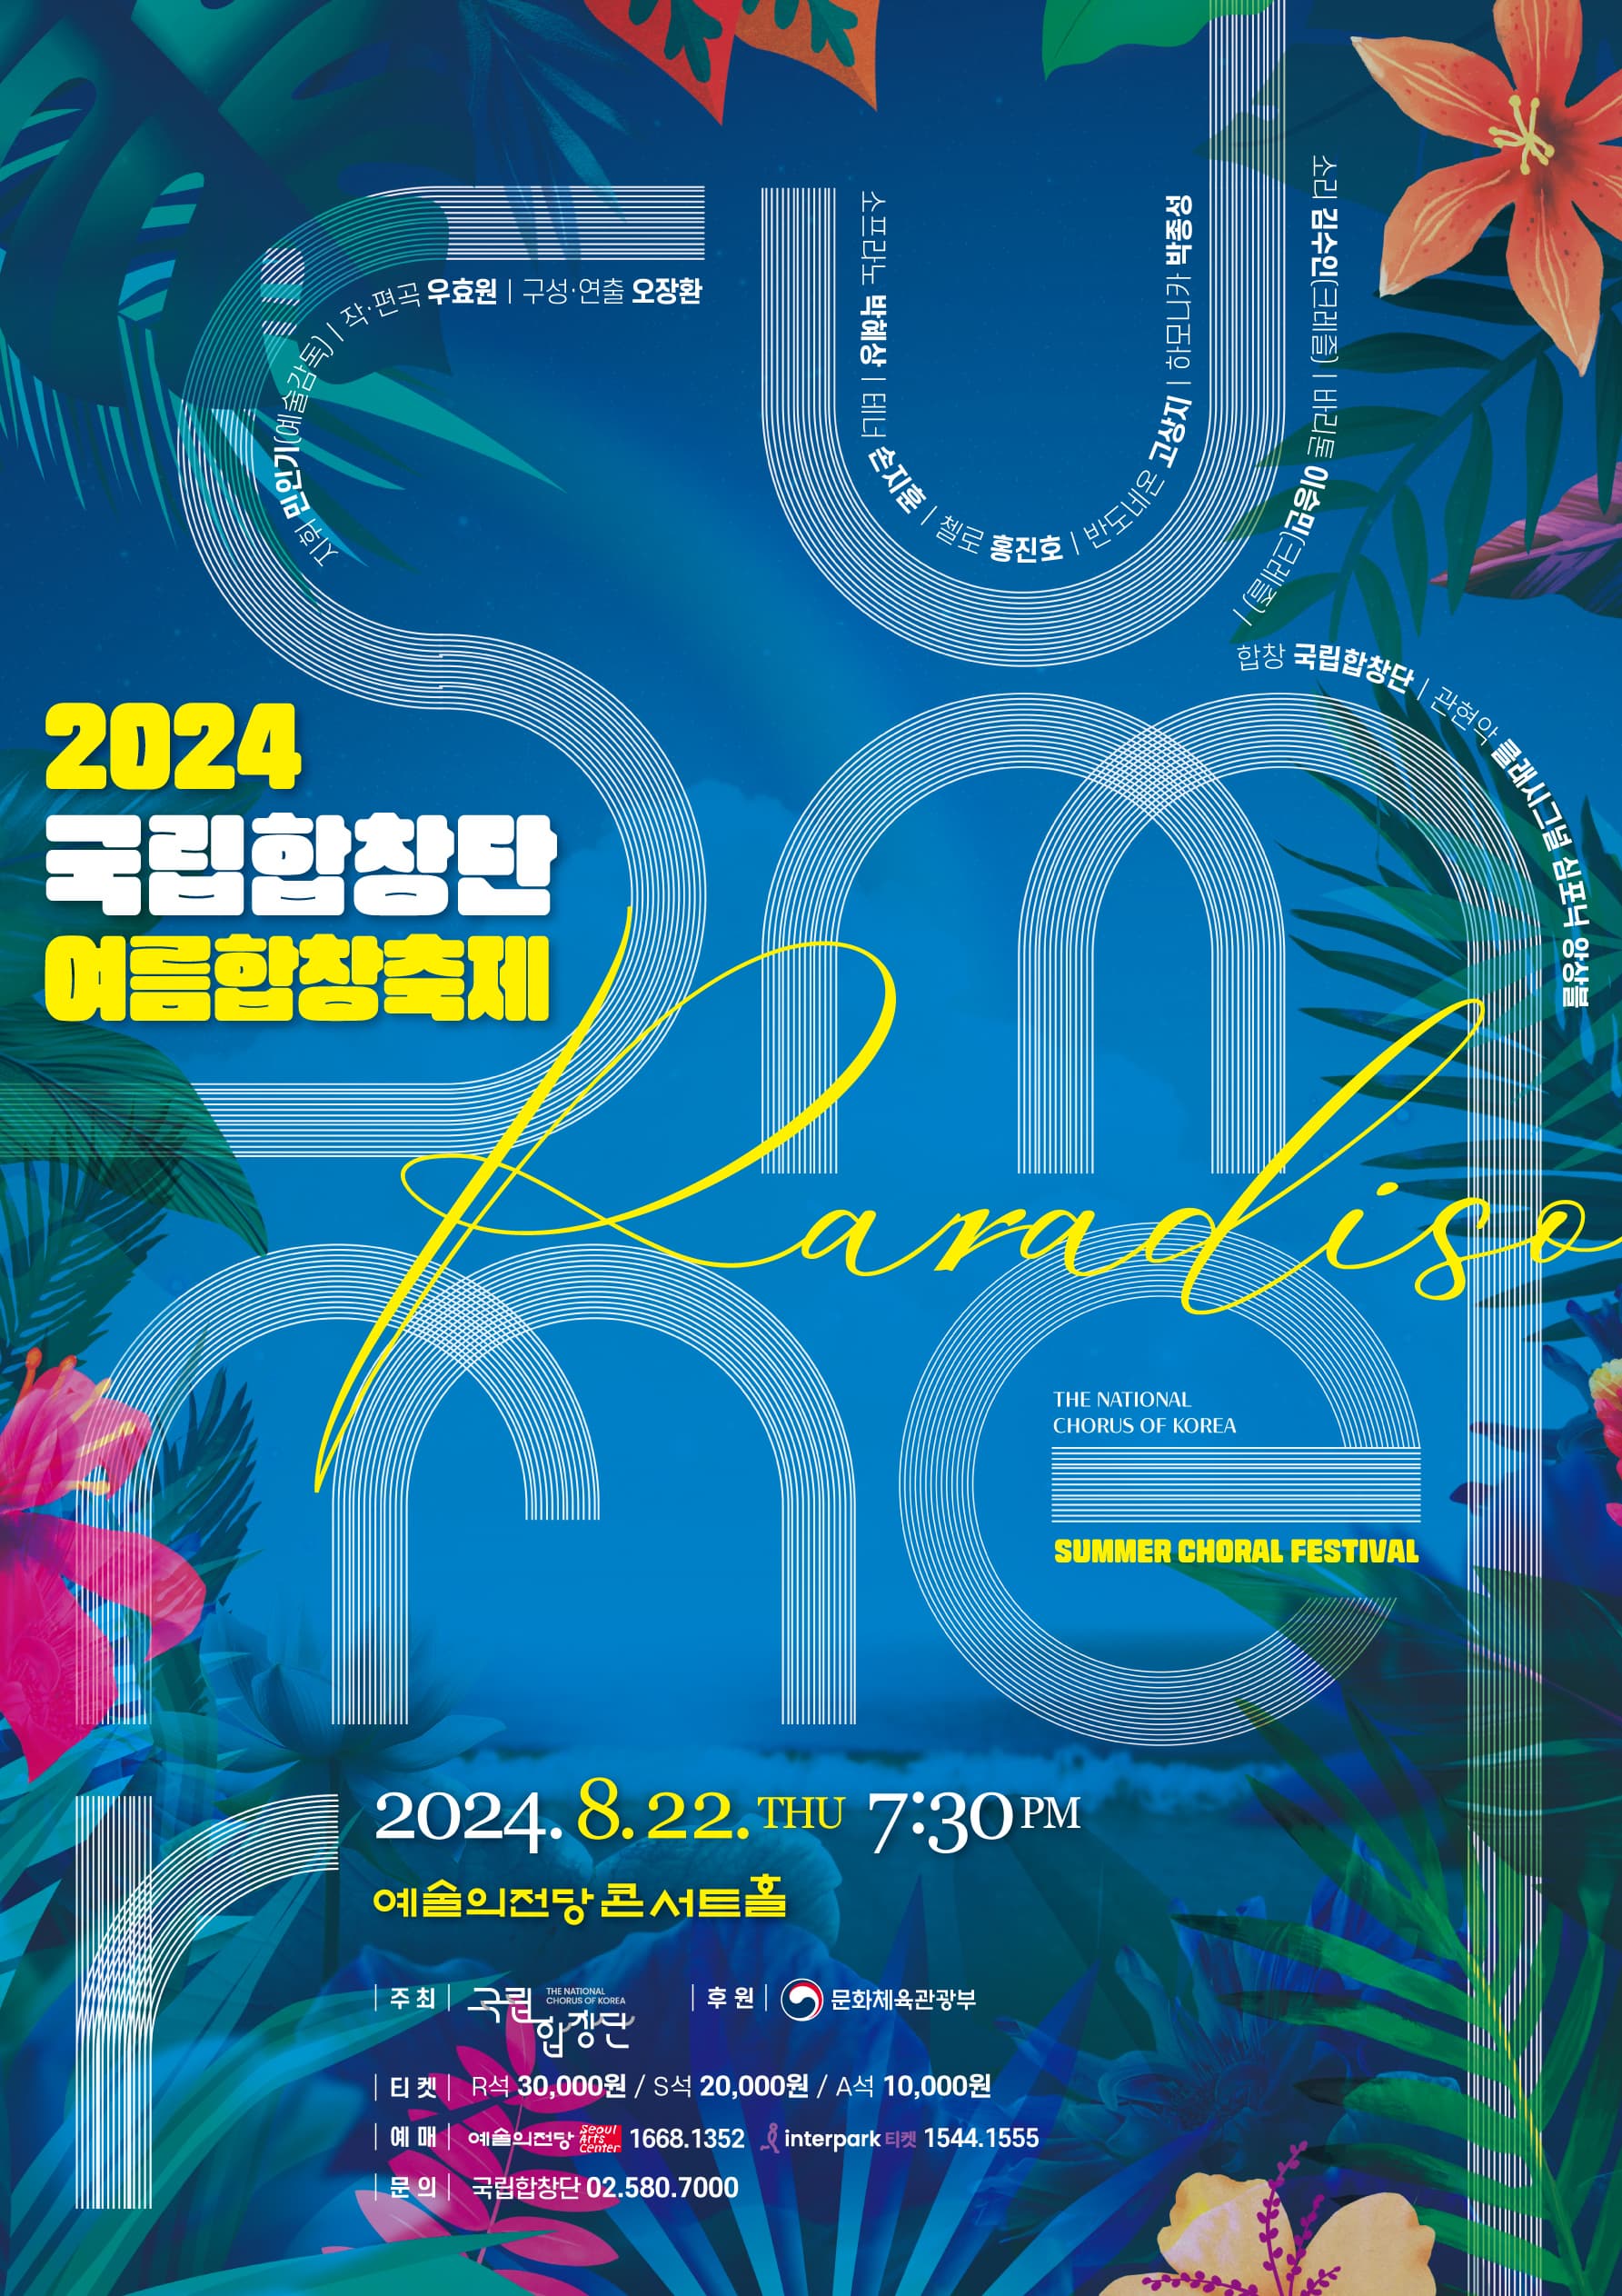 문화초대이벤트 <2024 국립합창단 여름합창축제, Summer Paradiso>